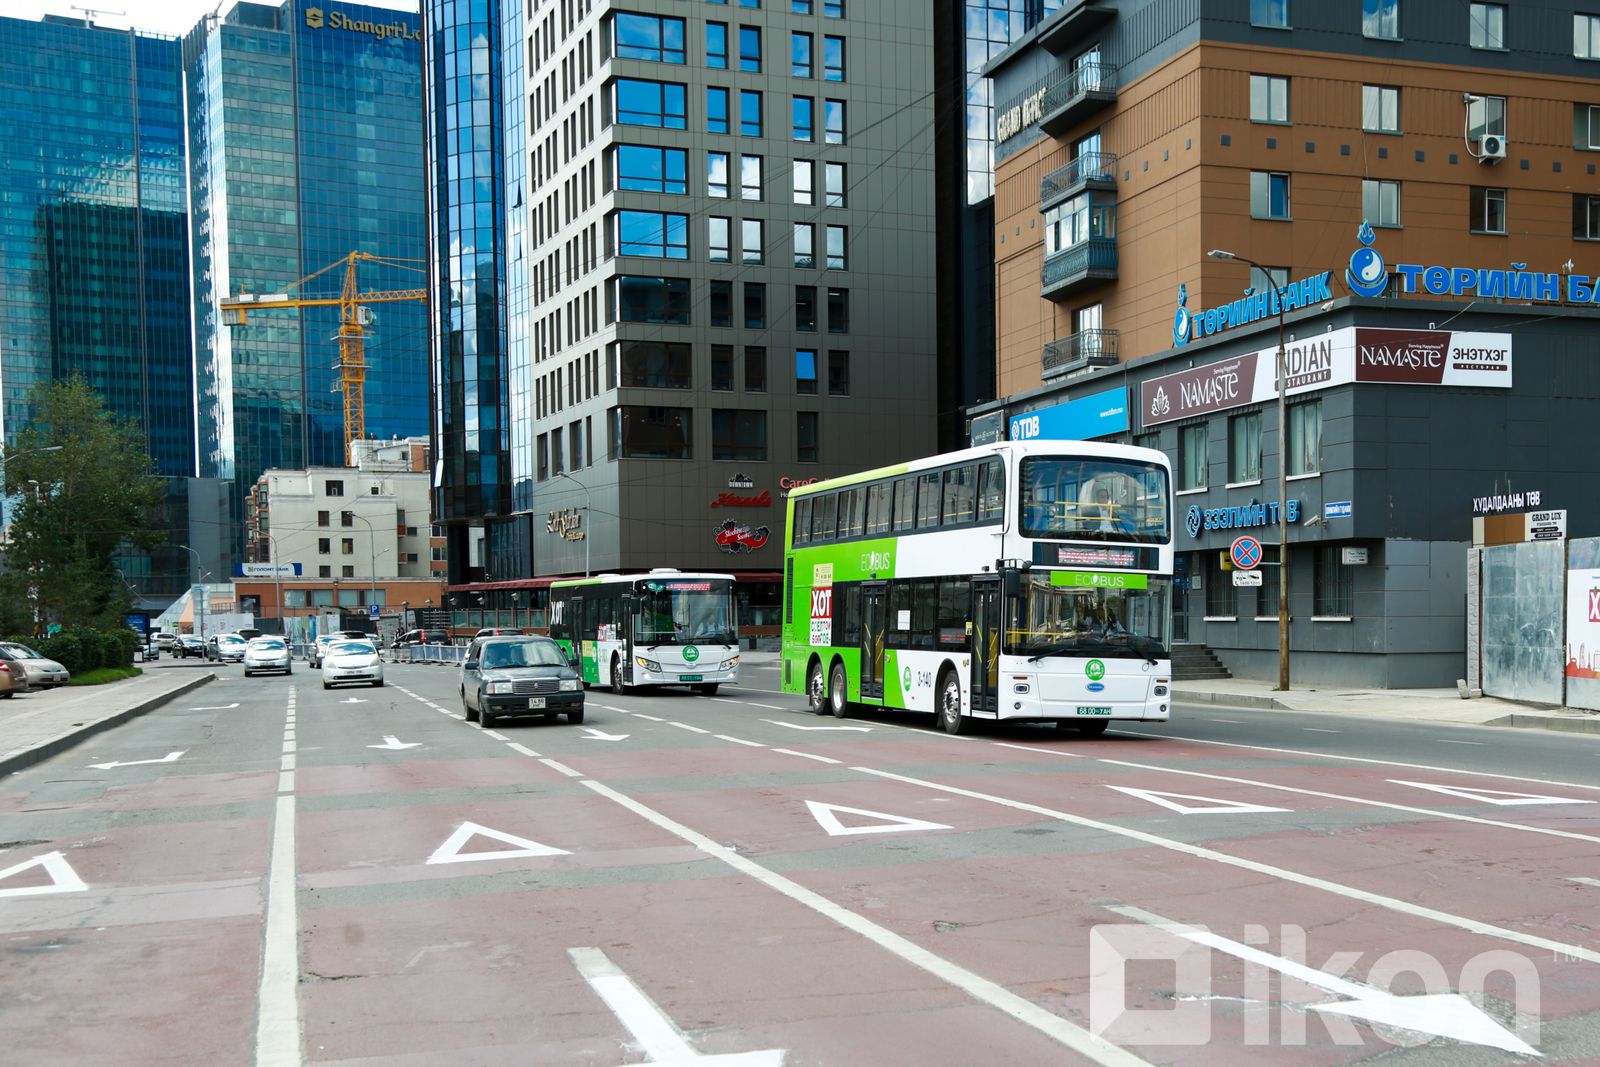 2022년에 개발 은행으로부터 자금을 빌려 2층 버스 10대를 도입할 것.jpg